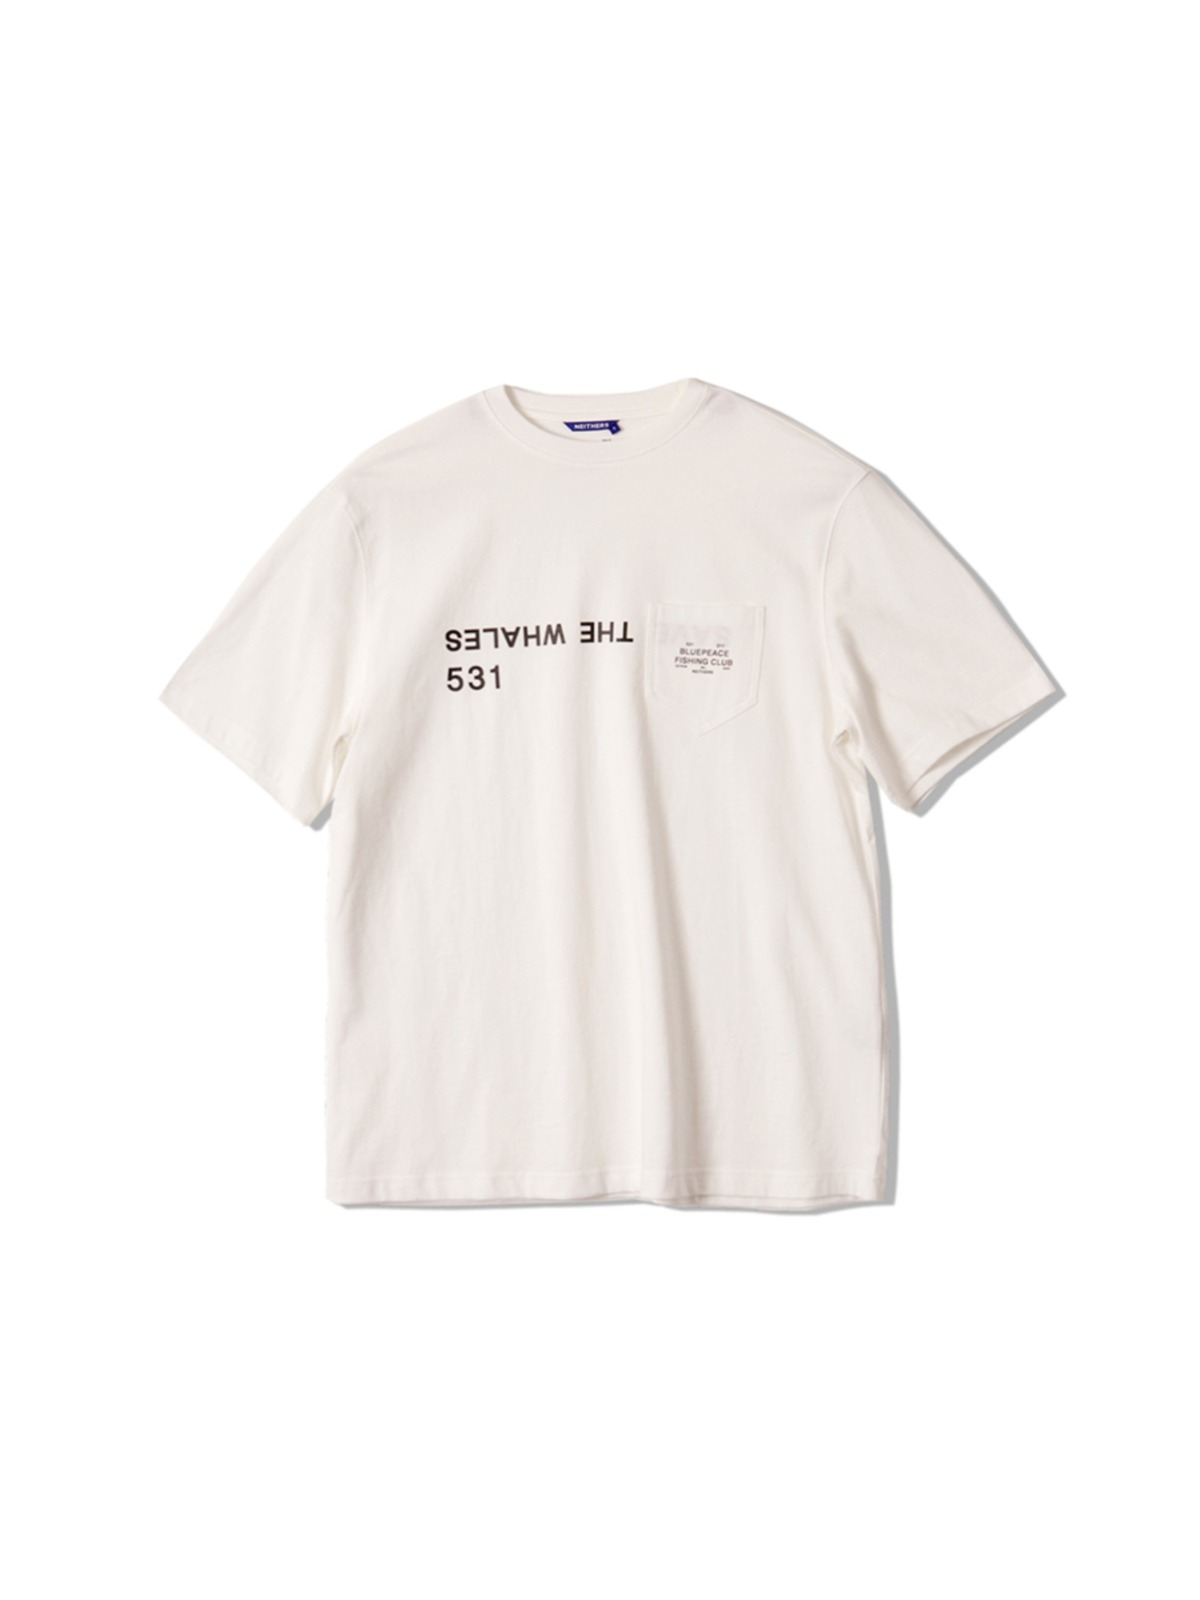 Club Pocket T-Shirt (White)